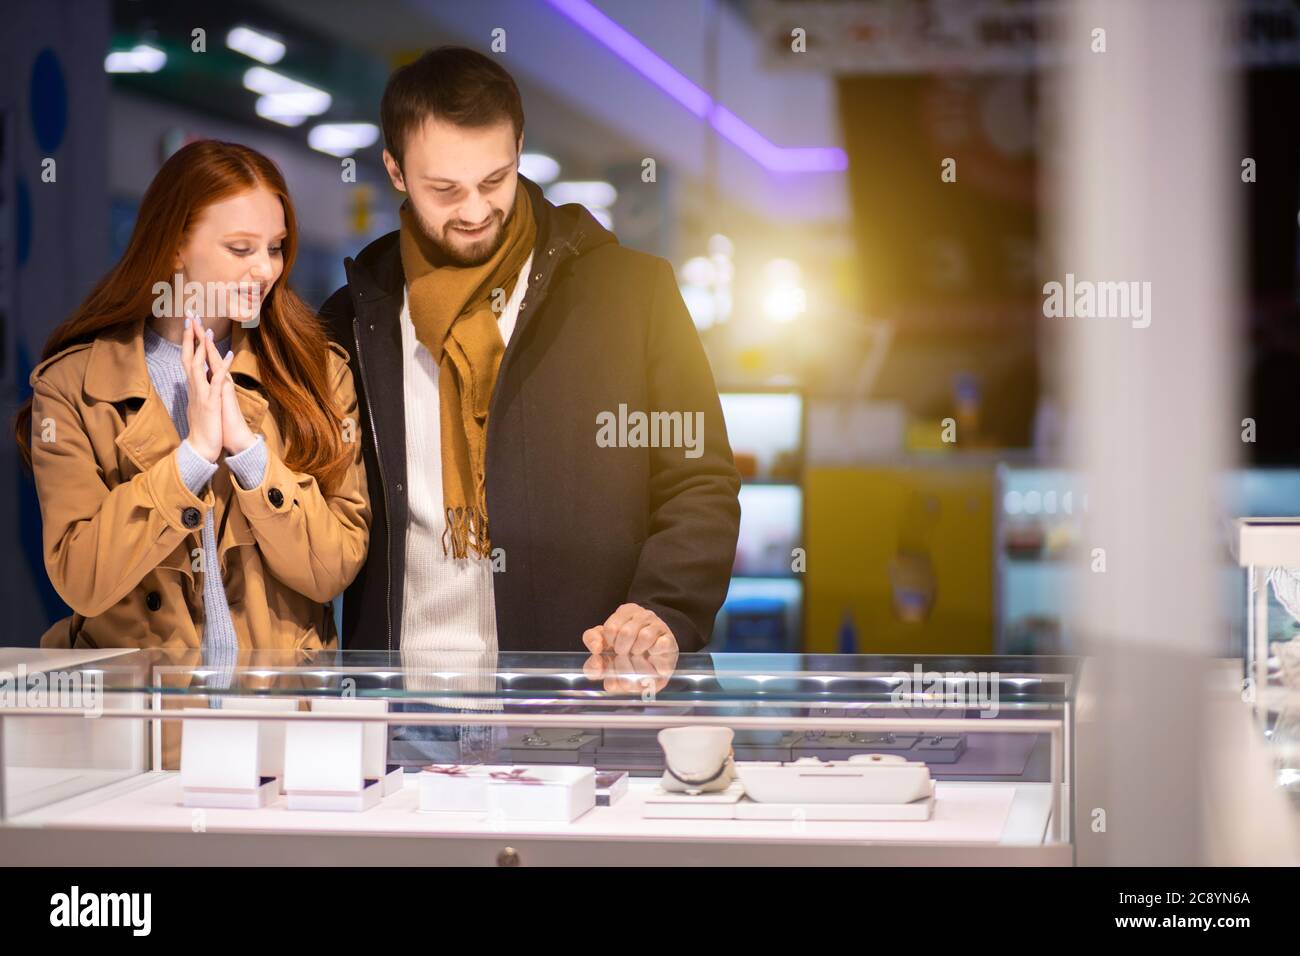 Liebe Konzept. Schöne schöne niedliche junge kaukasische Paar zusammen im Juweliergeschäft, wollen goldenen Ring kaufen Stockfoto